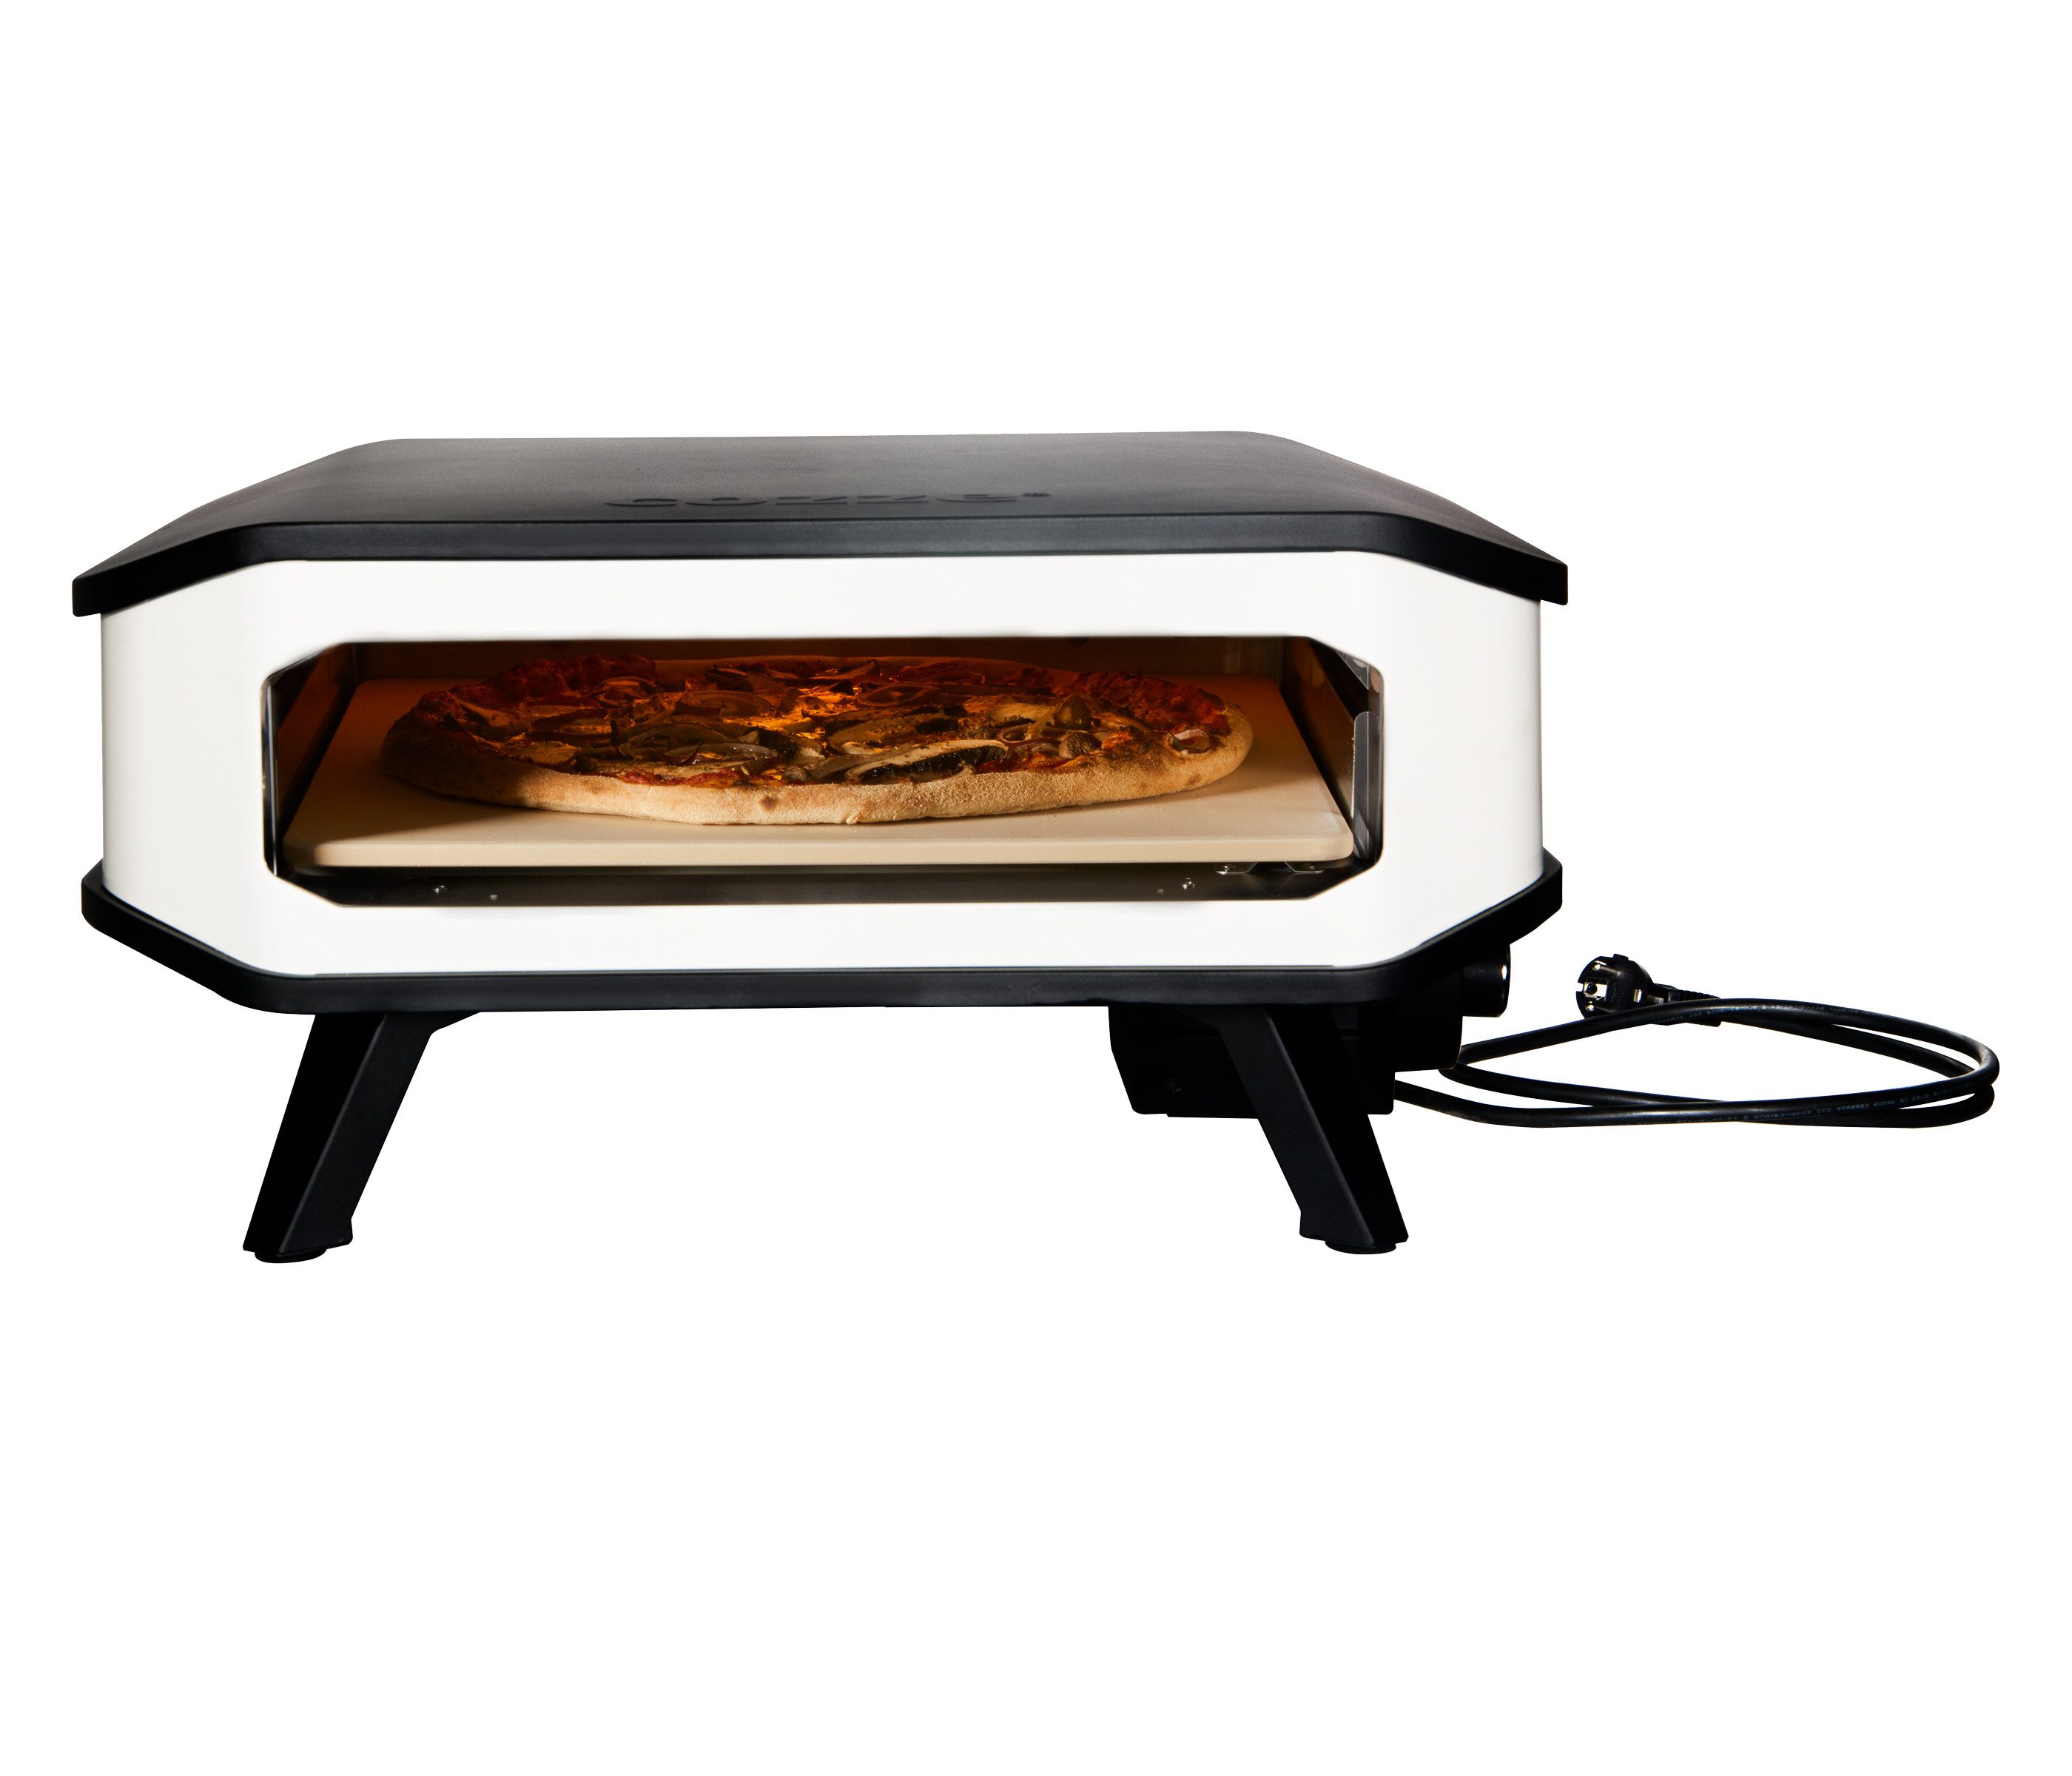 COZZE Pizzaofen Elektrischer Pizzaofen 17", inkl. Pizzastein, Backtemperatur bis 450°C, Grillfläche 42.5 x 42.5 cm, 2200 W, 230 V